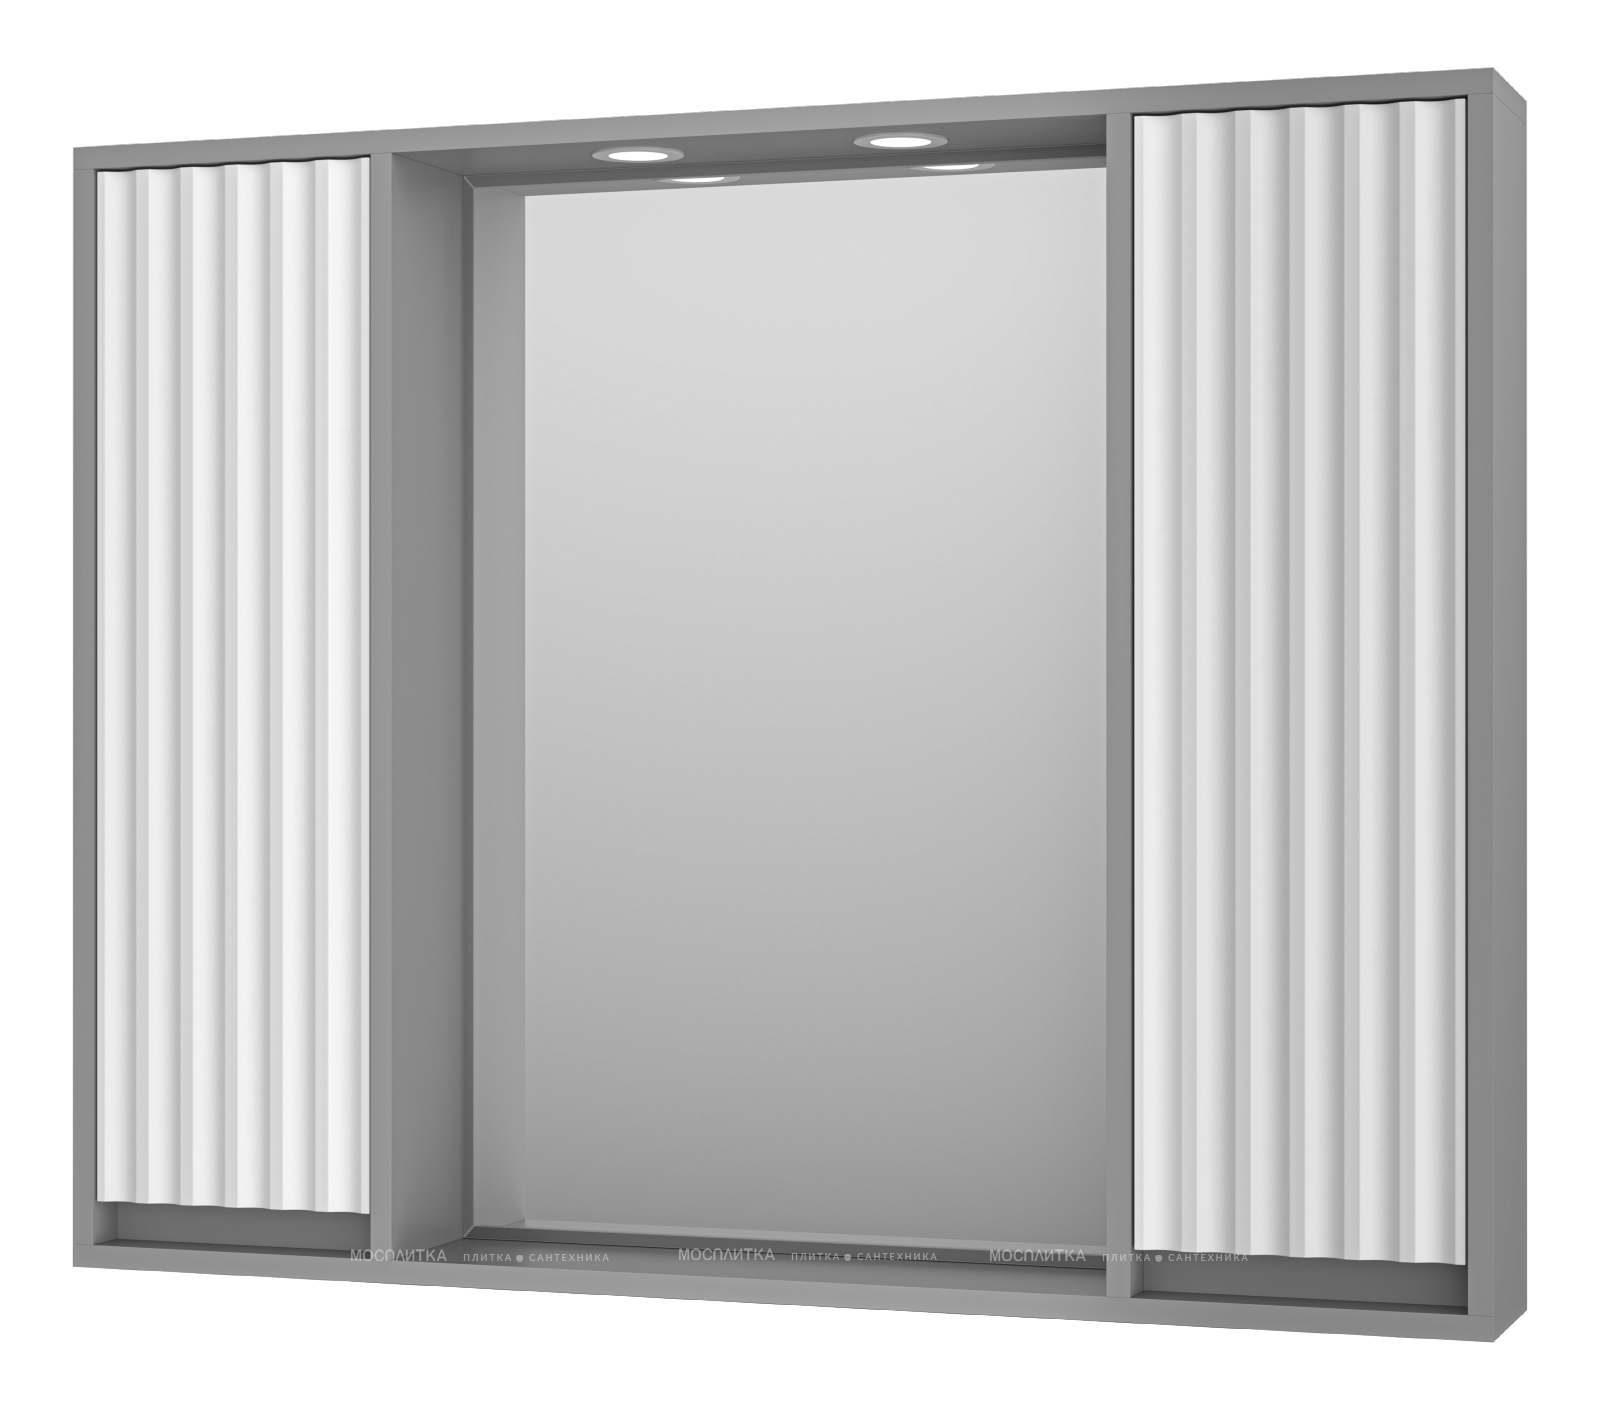 Зеркальный шкаф Brevita Balaton 100 см BAL-04100-01-01 с подсветкой, белый / серый - изображение 2